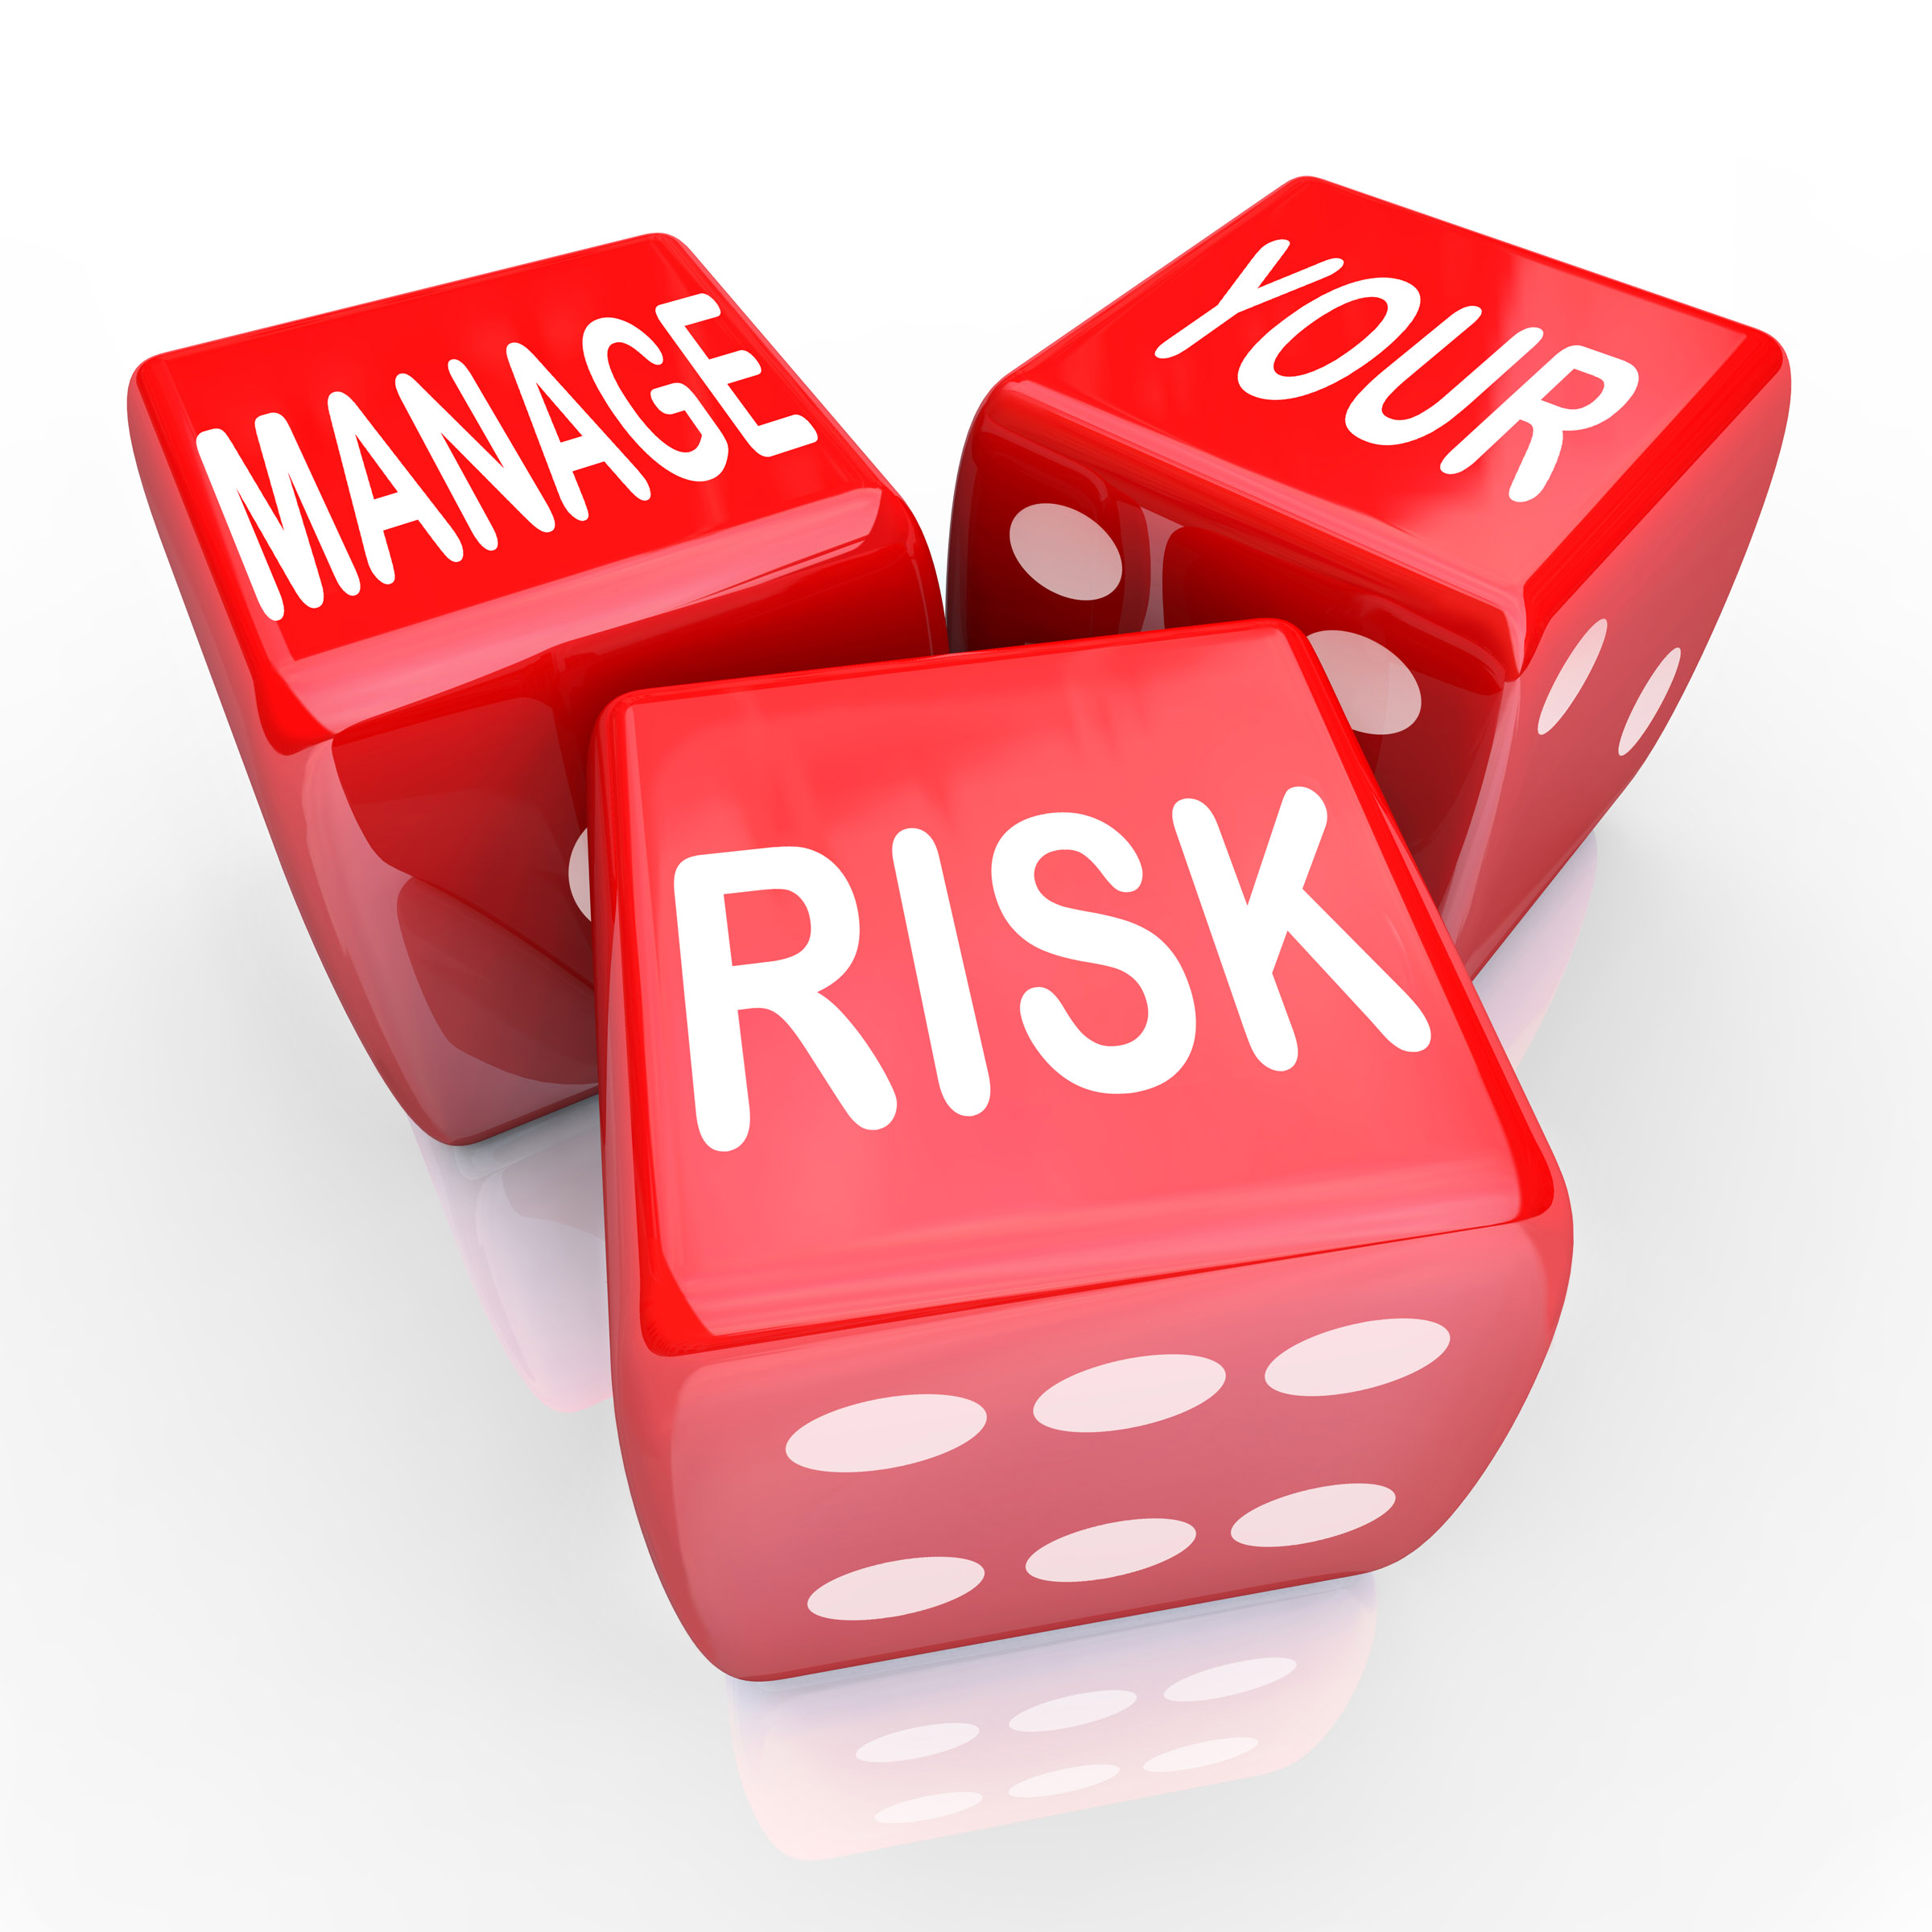 Risk manager figura-chiave per gestire le emergenze sanitarie e aumentare qualità e sicurezza delle cure